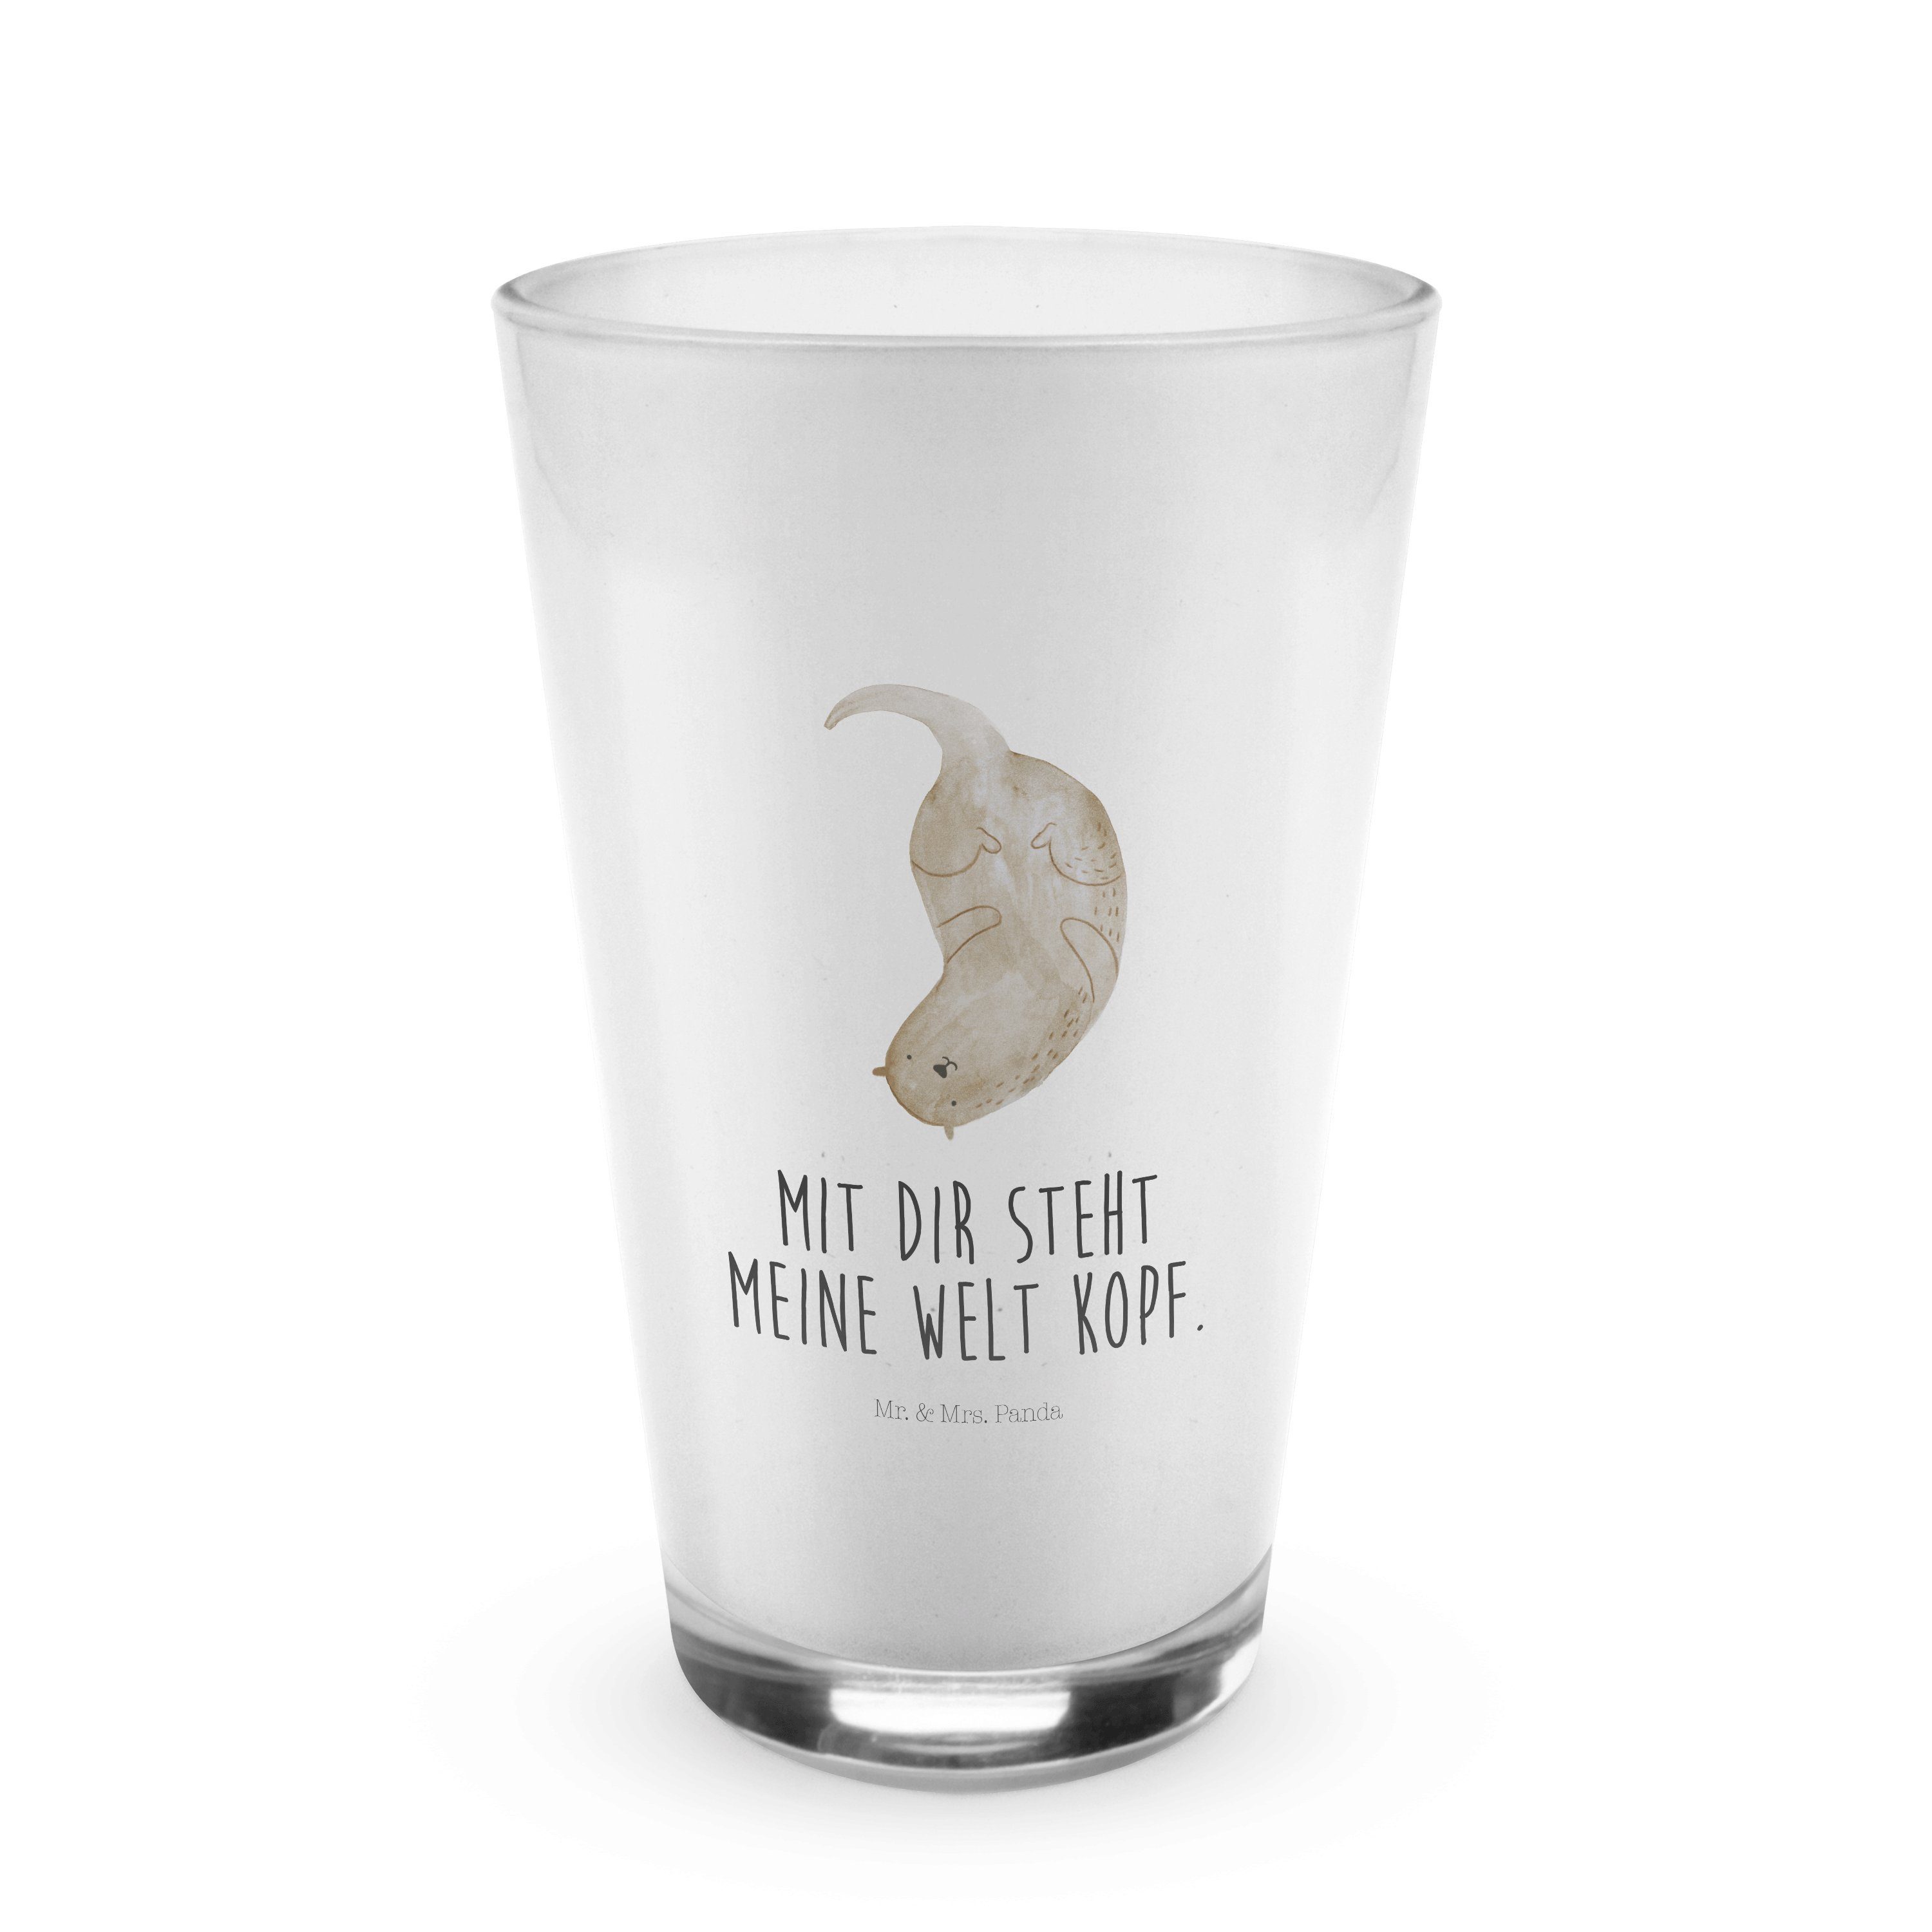 Mr. & Mrs. Otter kopfüber Glas Cappuccino Glas, Otter, - Geschenk, Transparent Premium Panda - Glas Glas